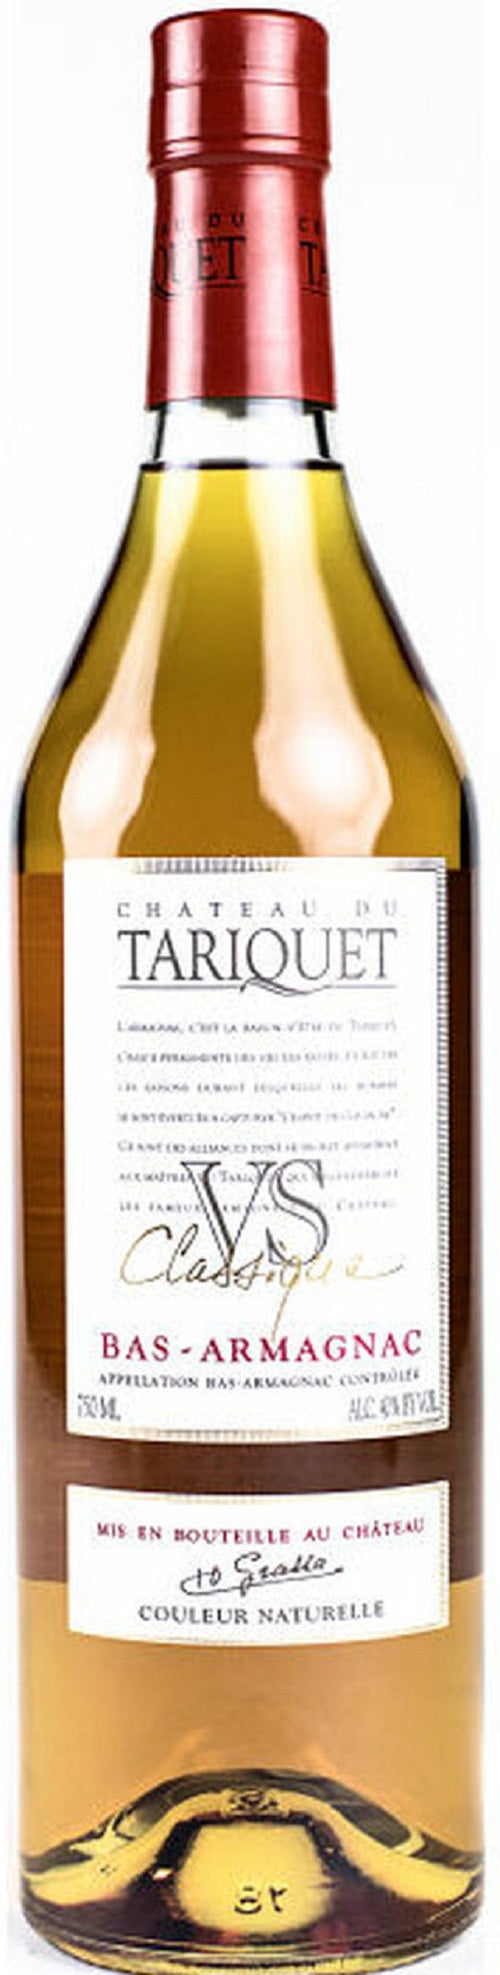 Chateau du Tariquet Bas-Armagnac VS Classique 3 Star 2012